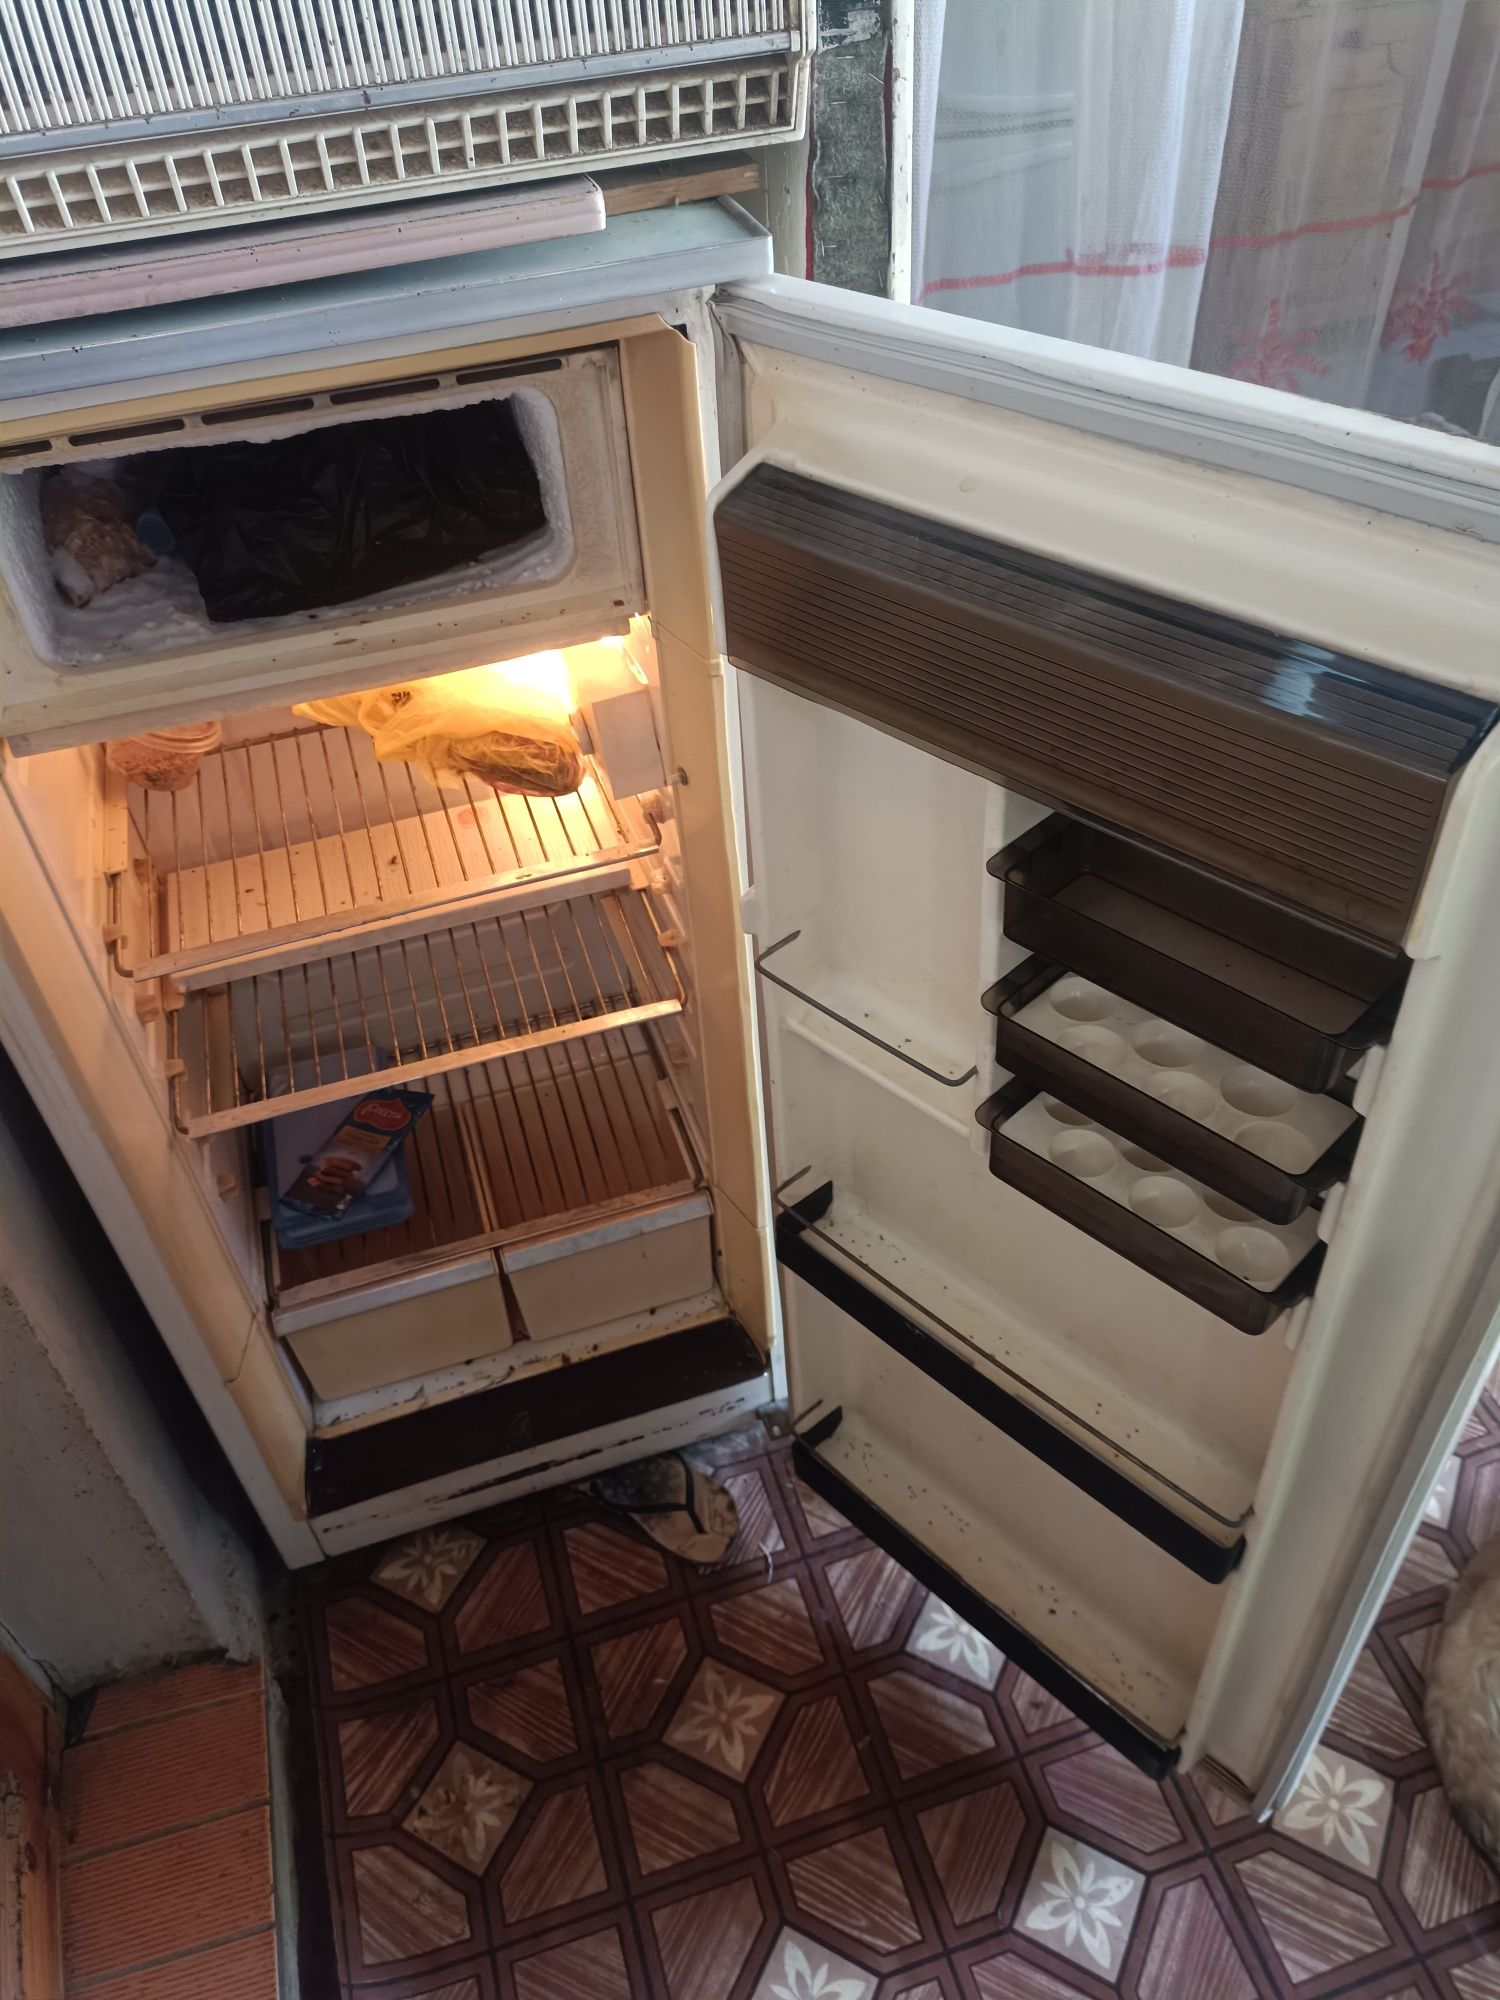 Продаётся холодильник состояние рабочее охлождает хорошо.